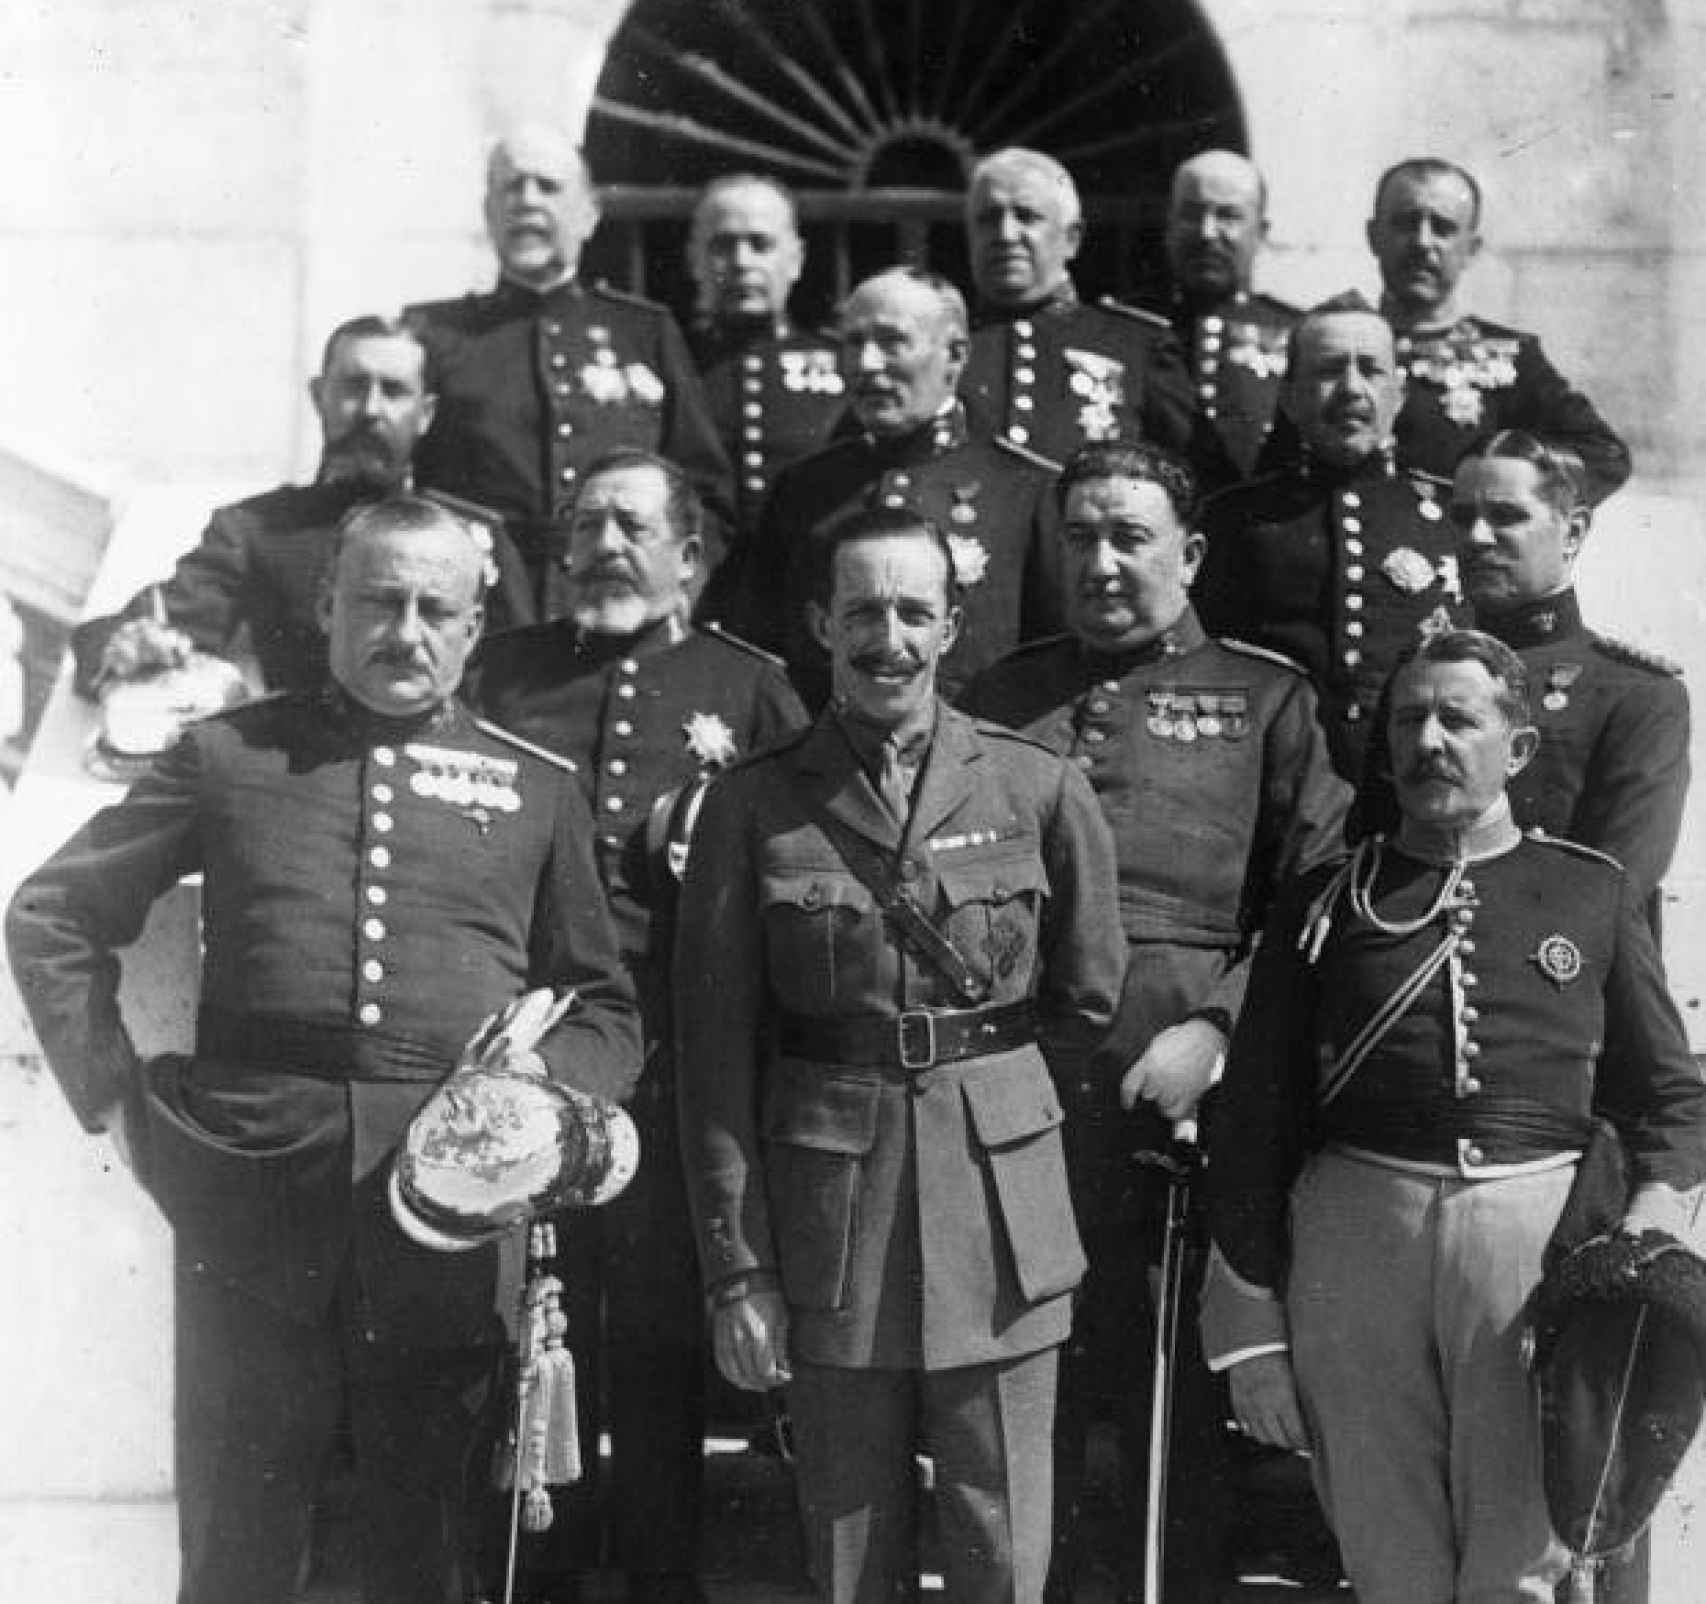 Primo de Rivera, Alfonso XIII y el Directorio militar. Madrid, 18 de septiembre de 1923.